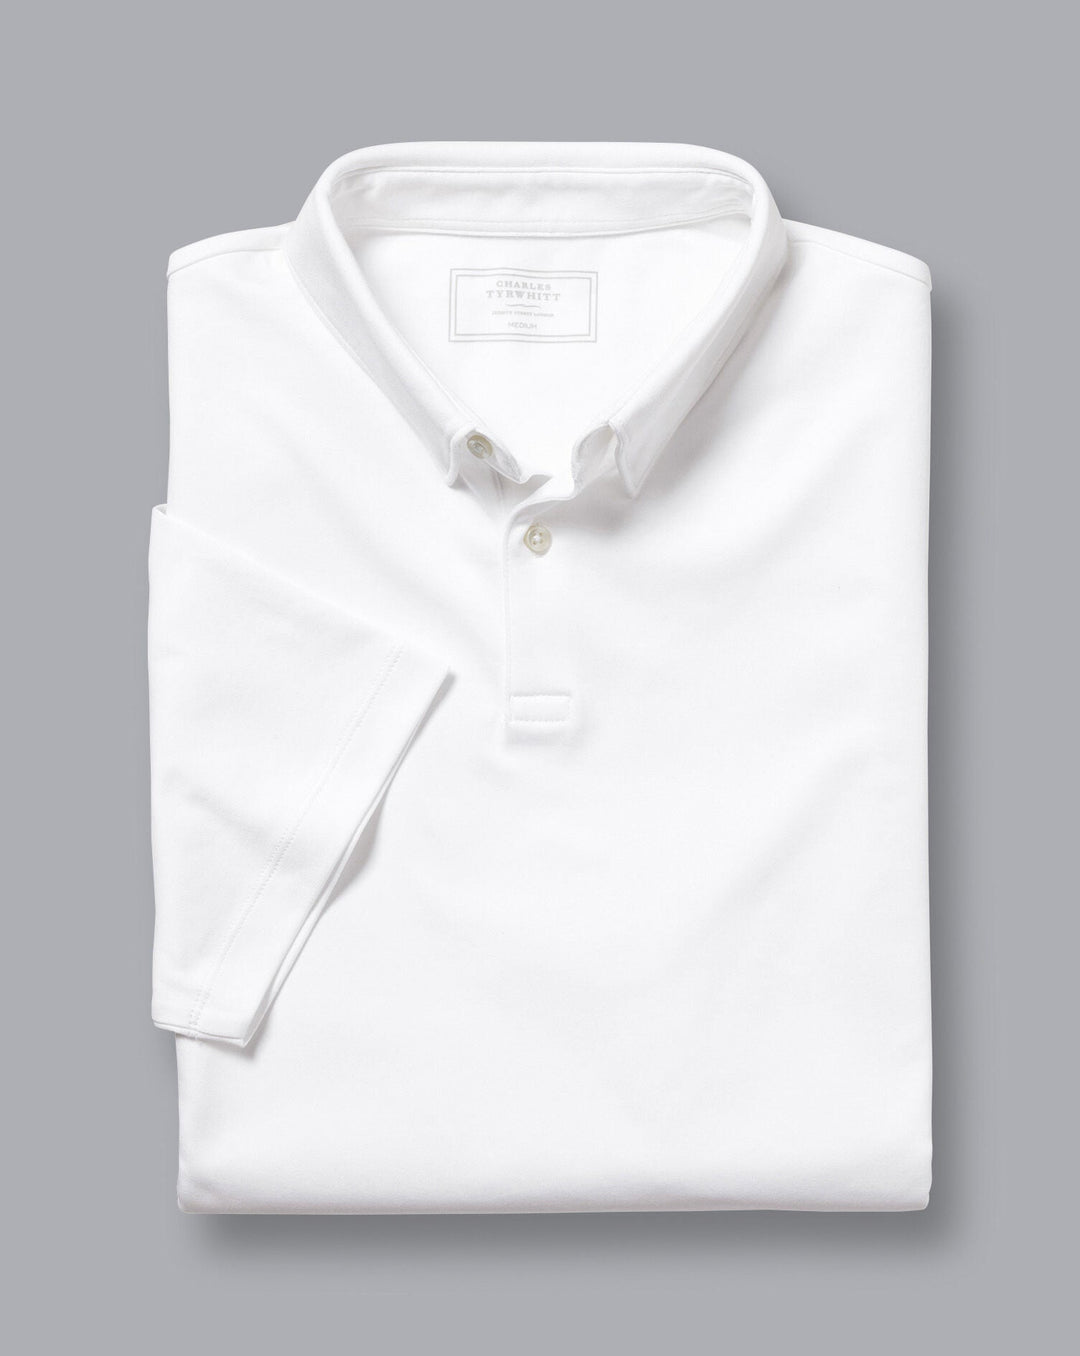 Charles Tyrwhitt White Plain Short Sleeve Jersey Polo